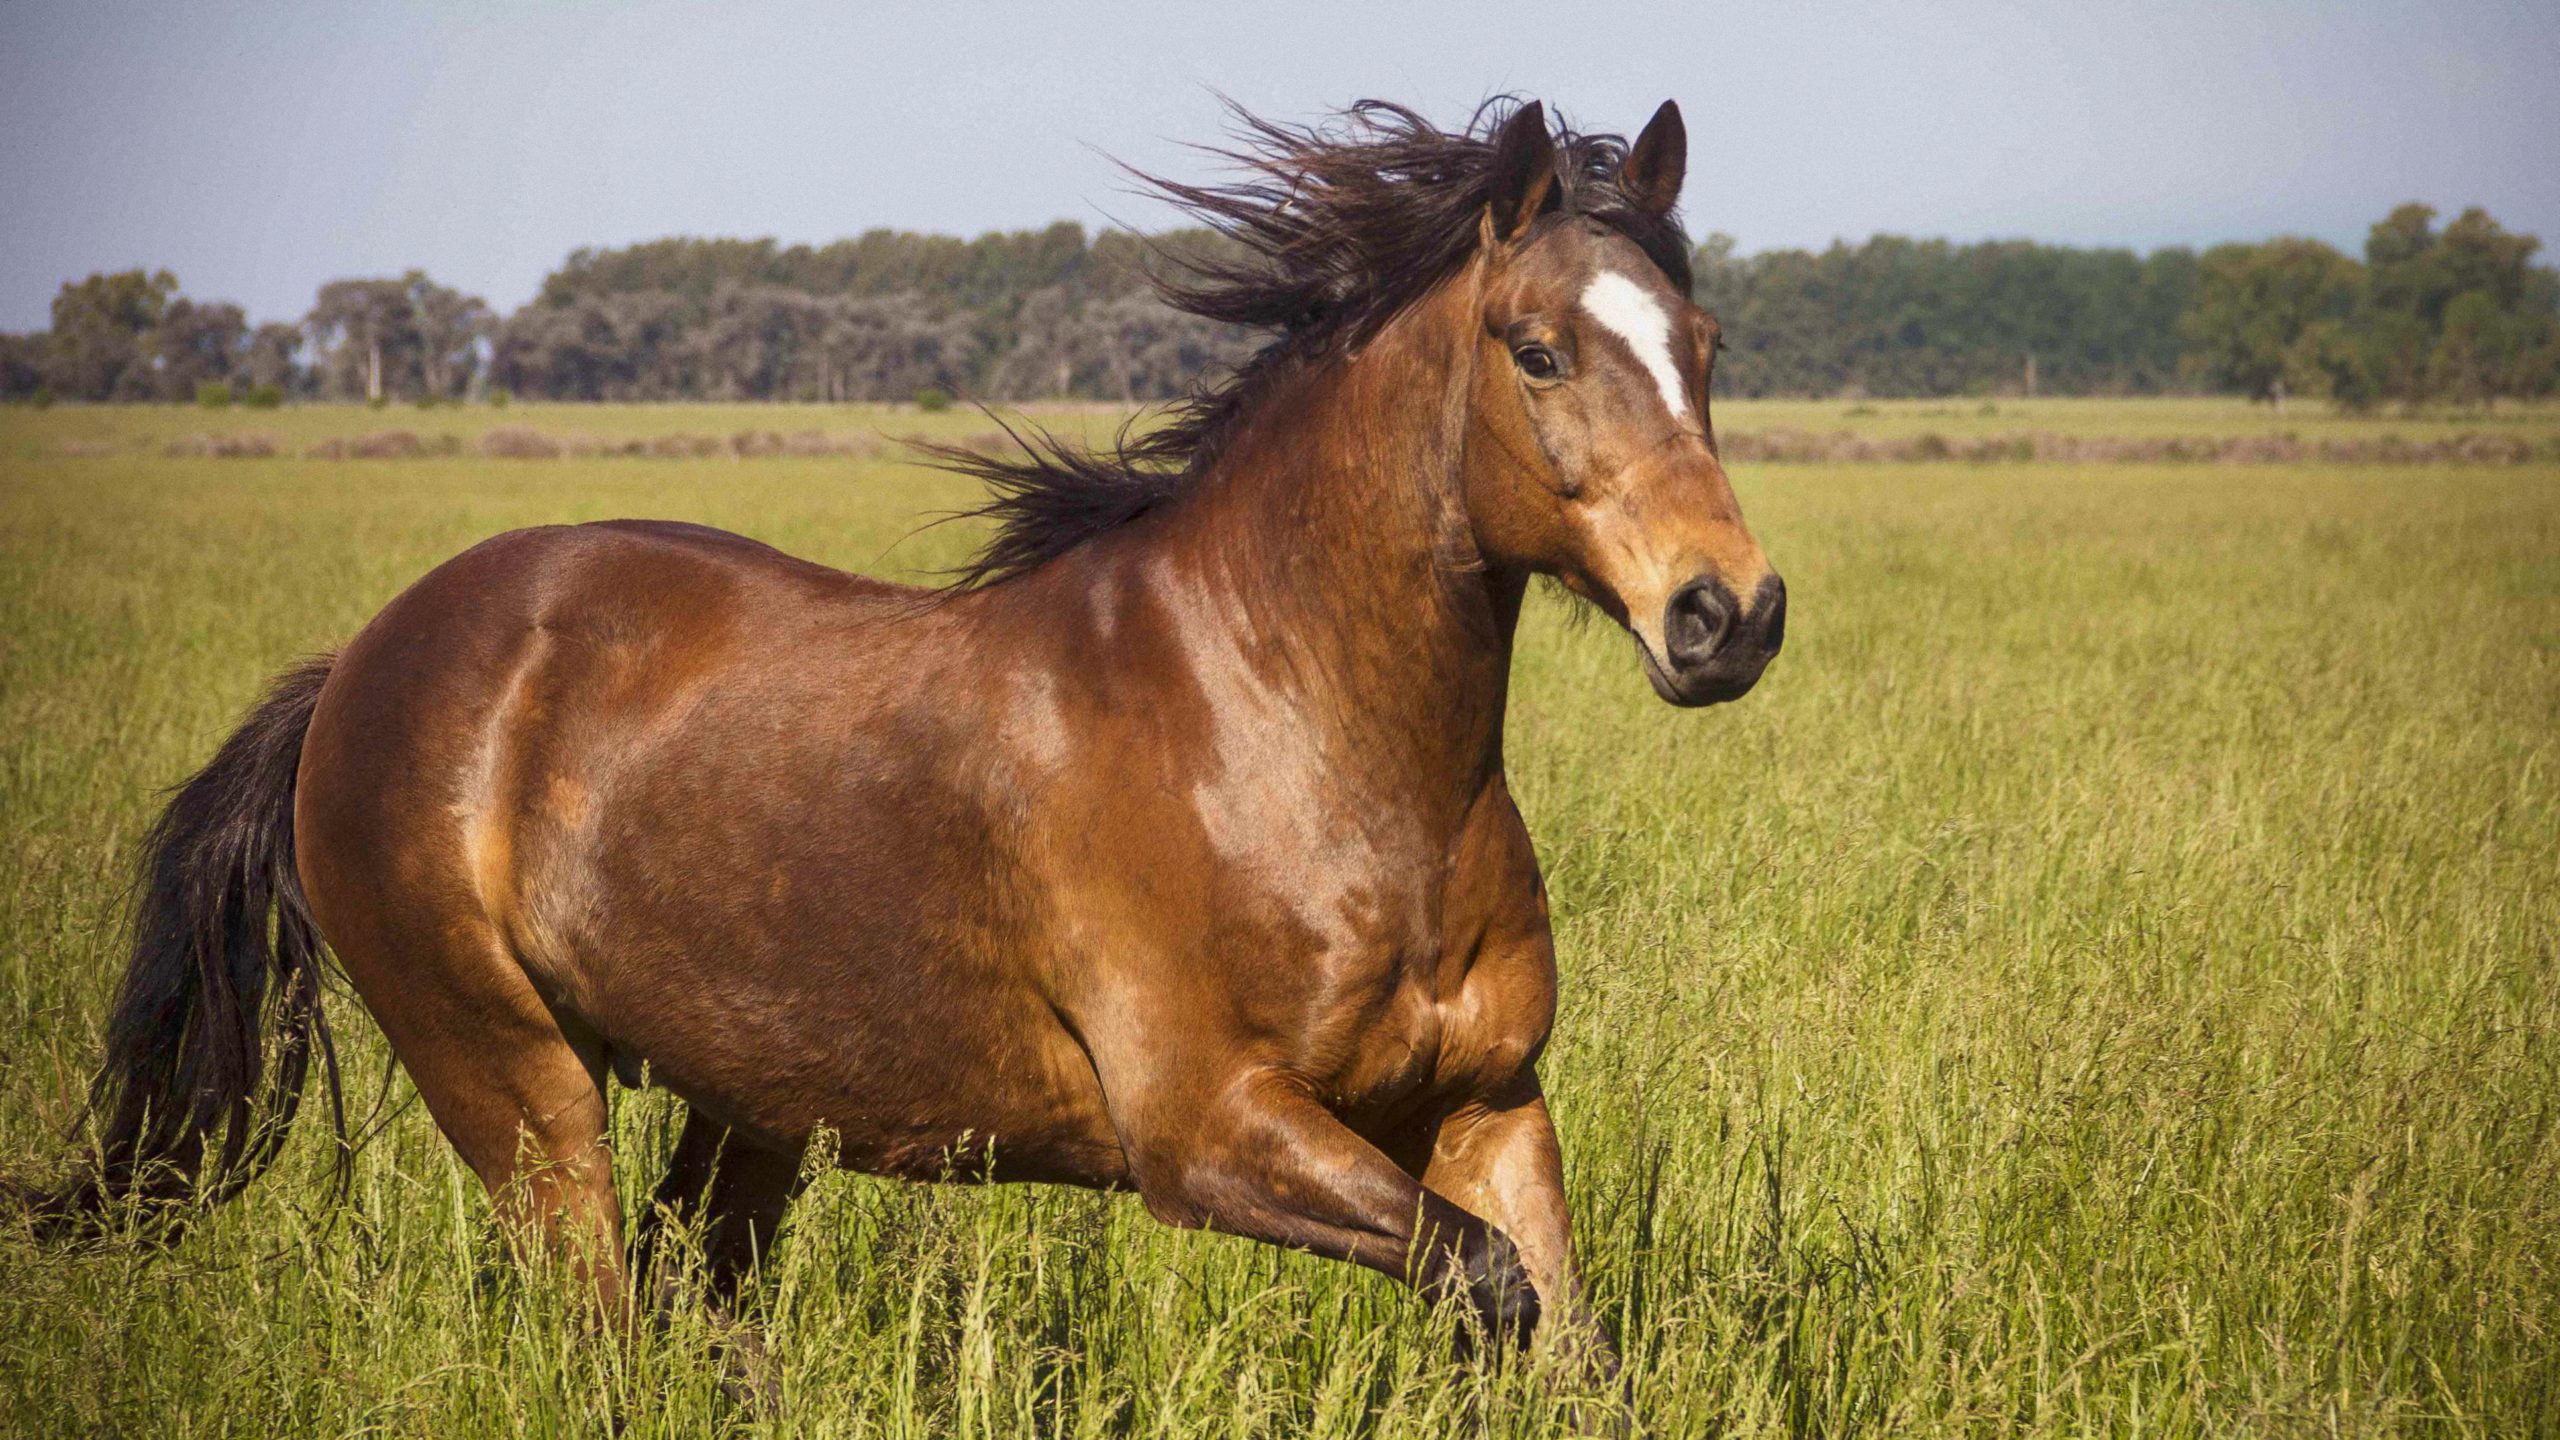 Tổng hợp hình ảnh về những chú ngựa đẹp nhất  - [Kích thước hình ảnh: 2560x1440 px]